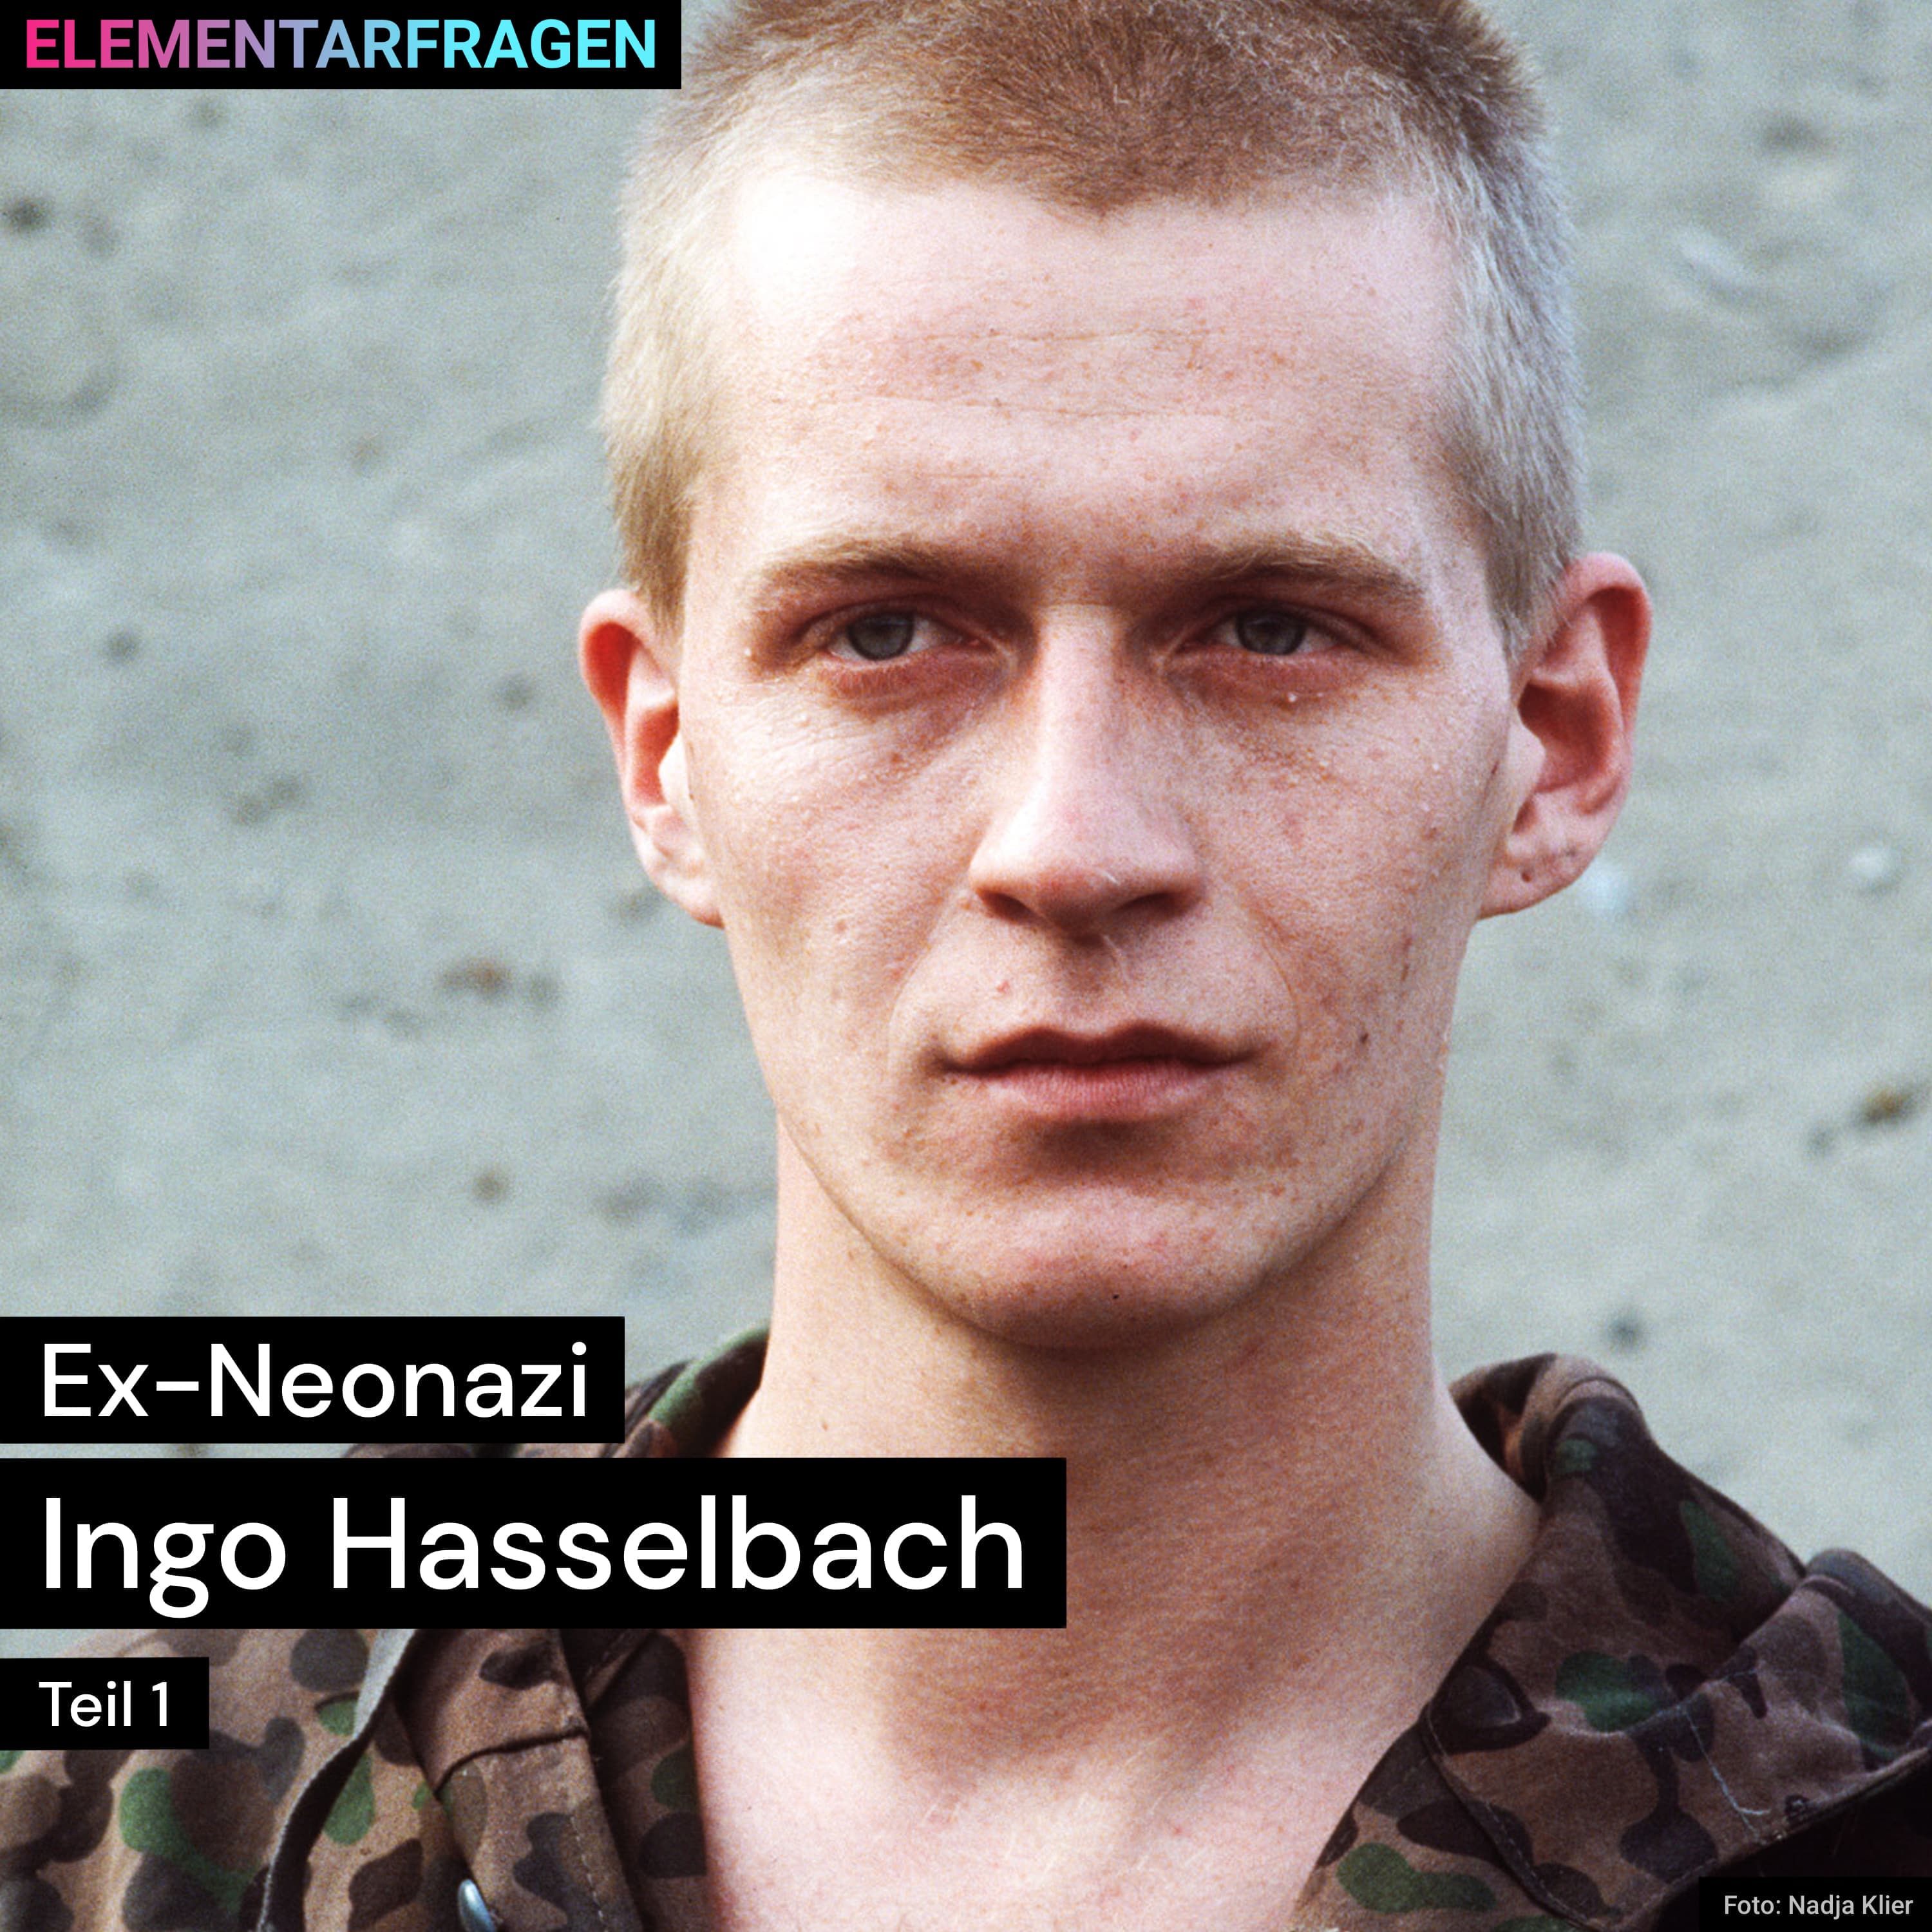 Ex-Neonazi: Ingo Hasselbach (Teil 1) | Elementarfragen